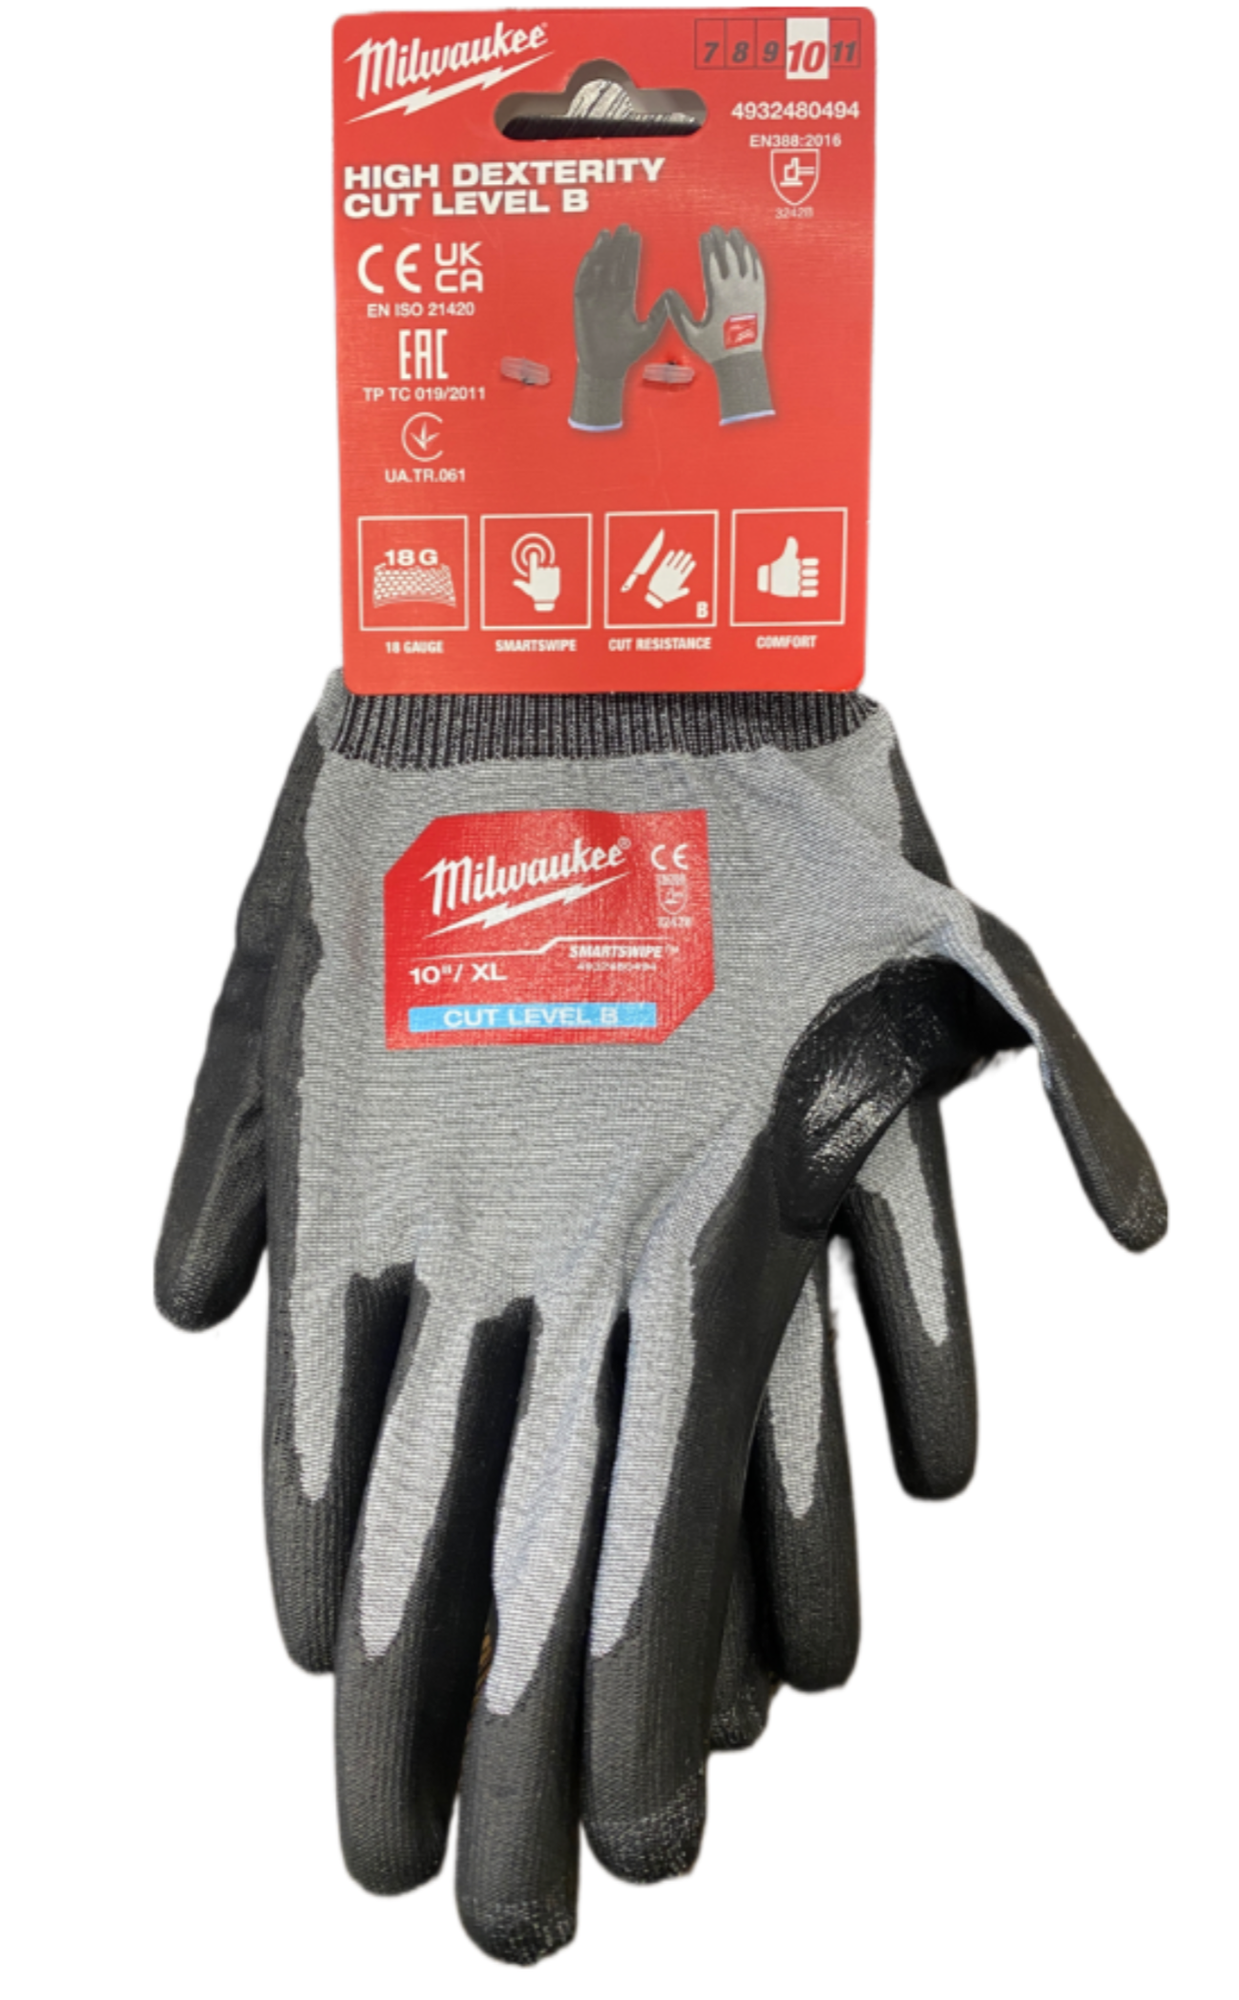 Перчатки Milwaukee Hi-DEX с уровнем сопротивления к порезам 2/B, размер XL/10, 4932480494